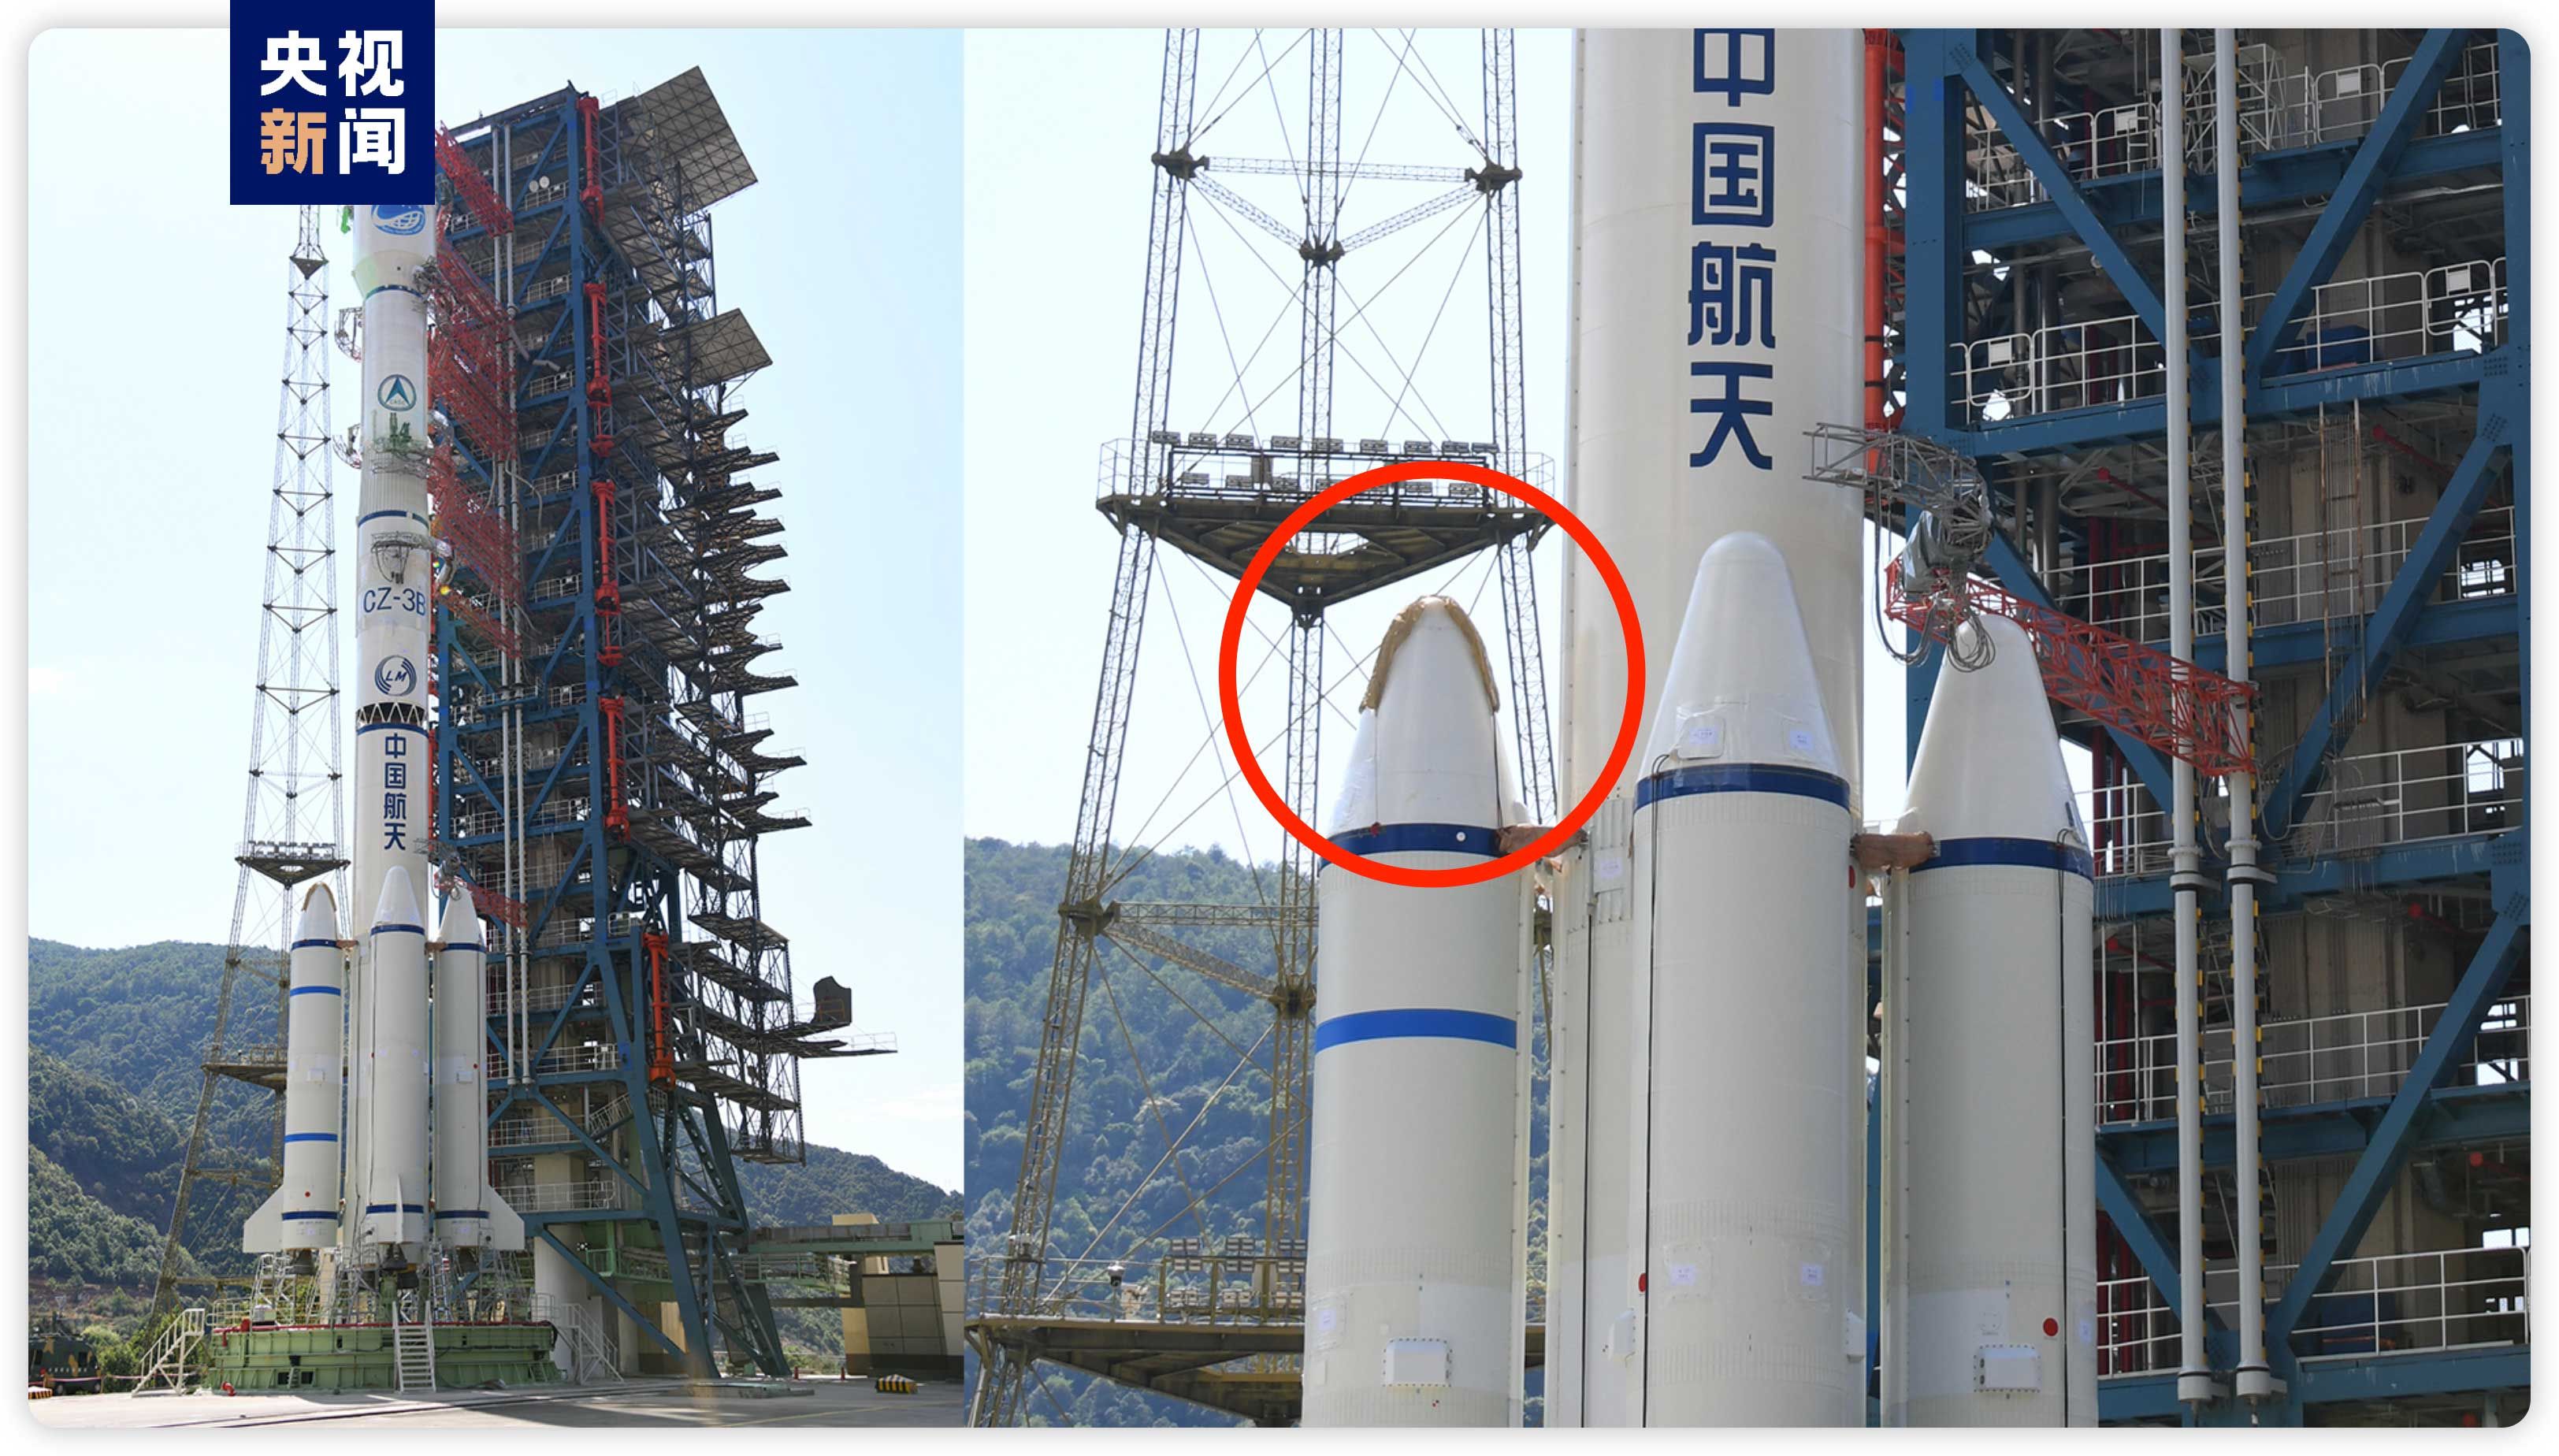 中国运载火箭技术发展和模式变革(运载火箭发射落区)